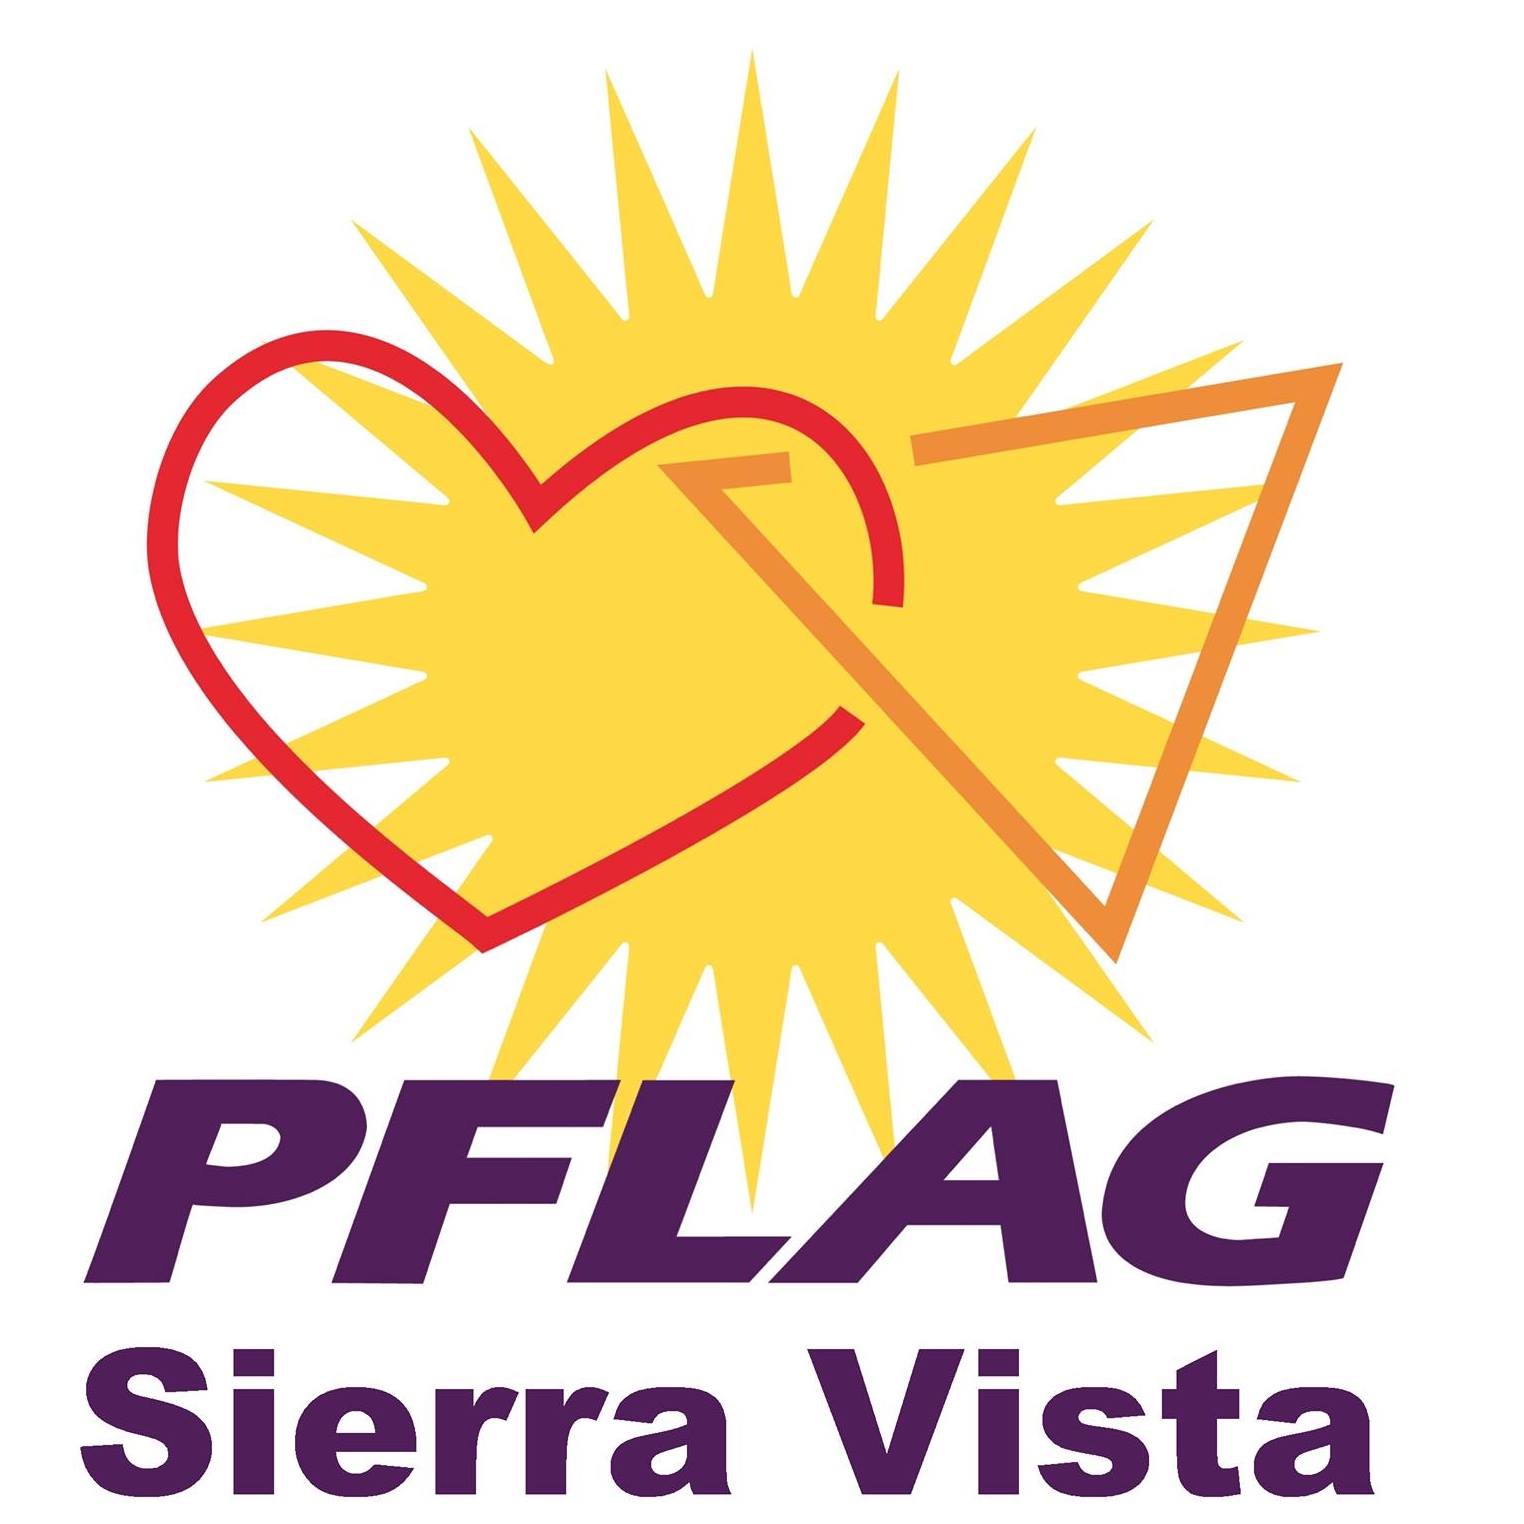 LGBTQ Organization in Phoenix Arizona - PFLAG Sierra Vista